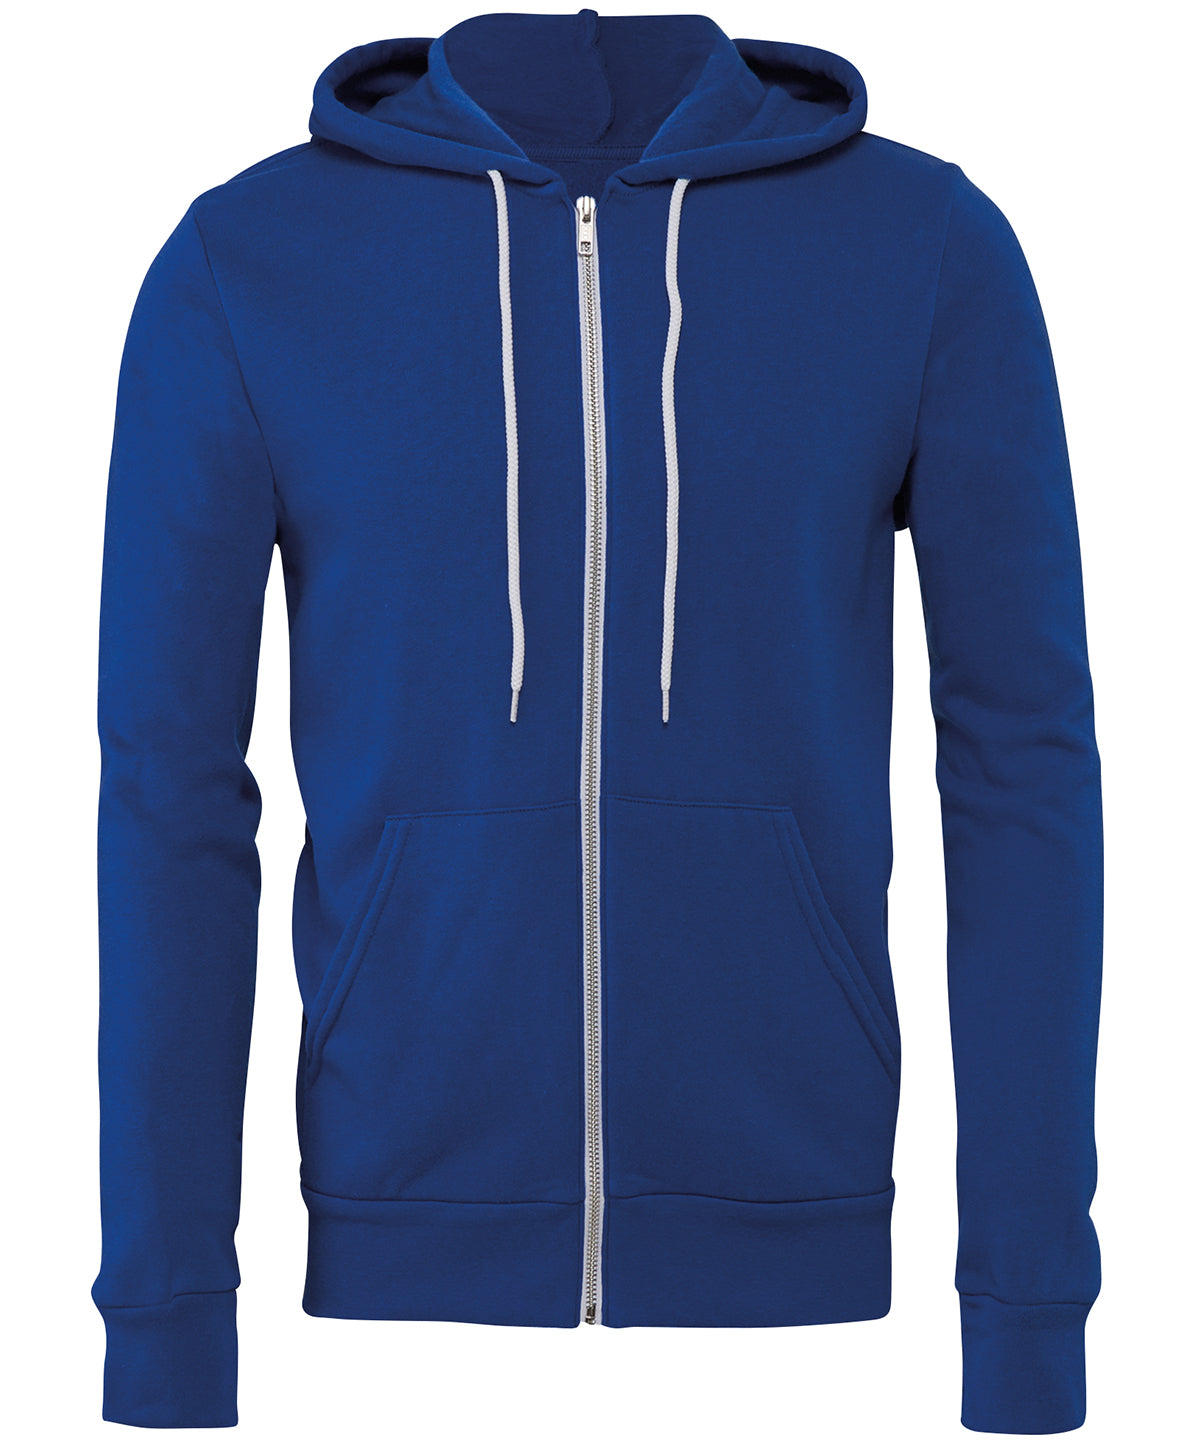 Personalised Hoodies - Tan Bella Canvas Unisex polycotton fleece full-zip hoodie